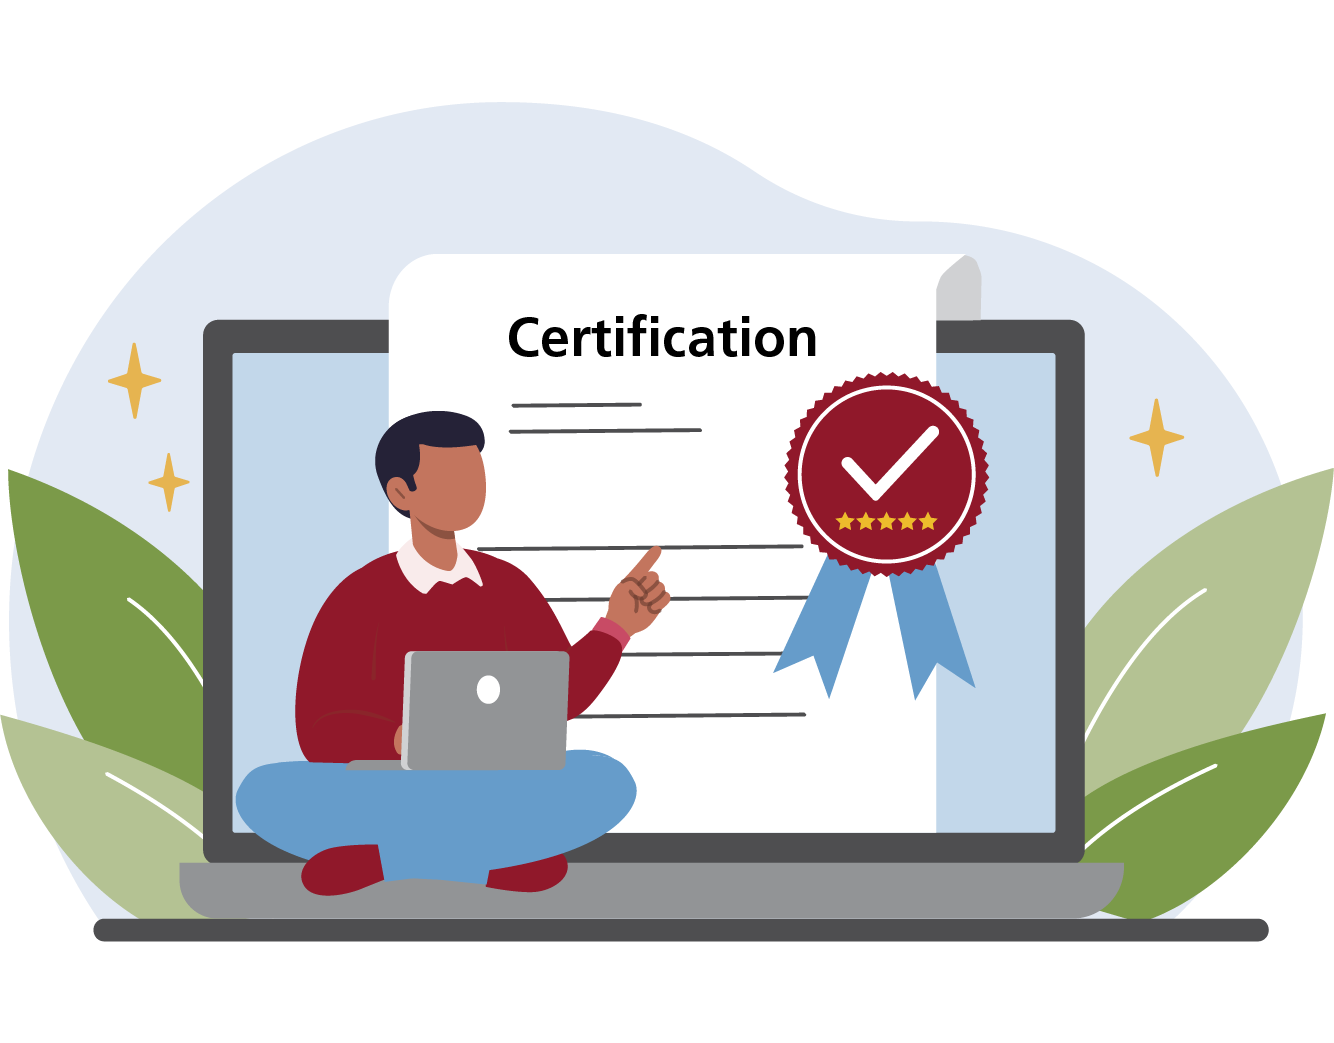 Badge / Certificate